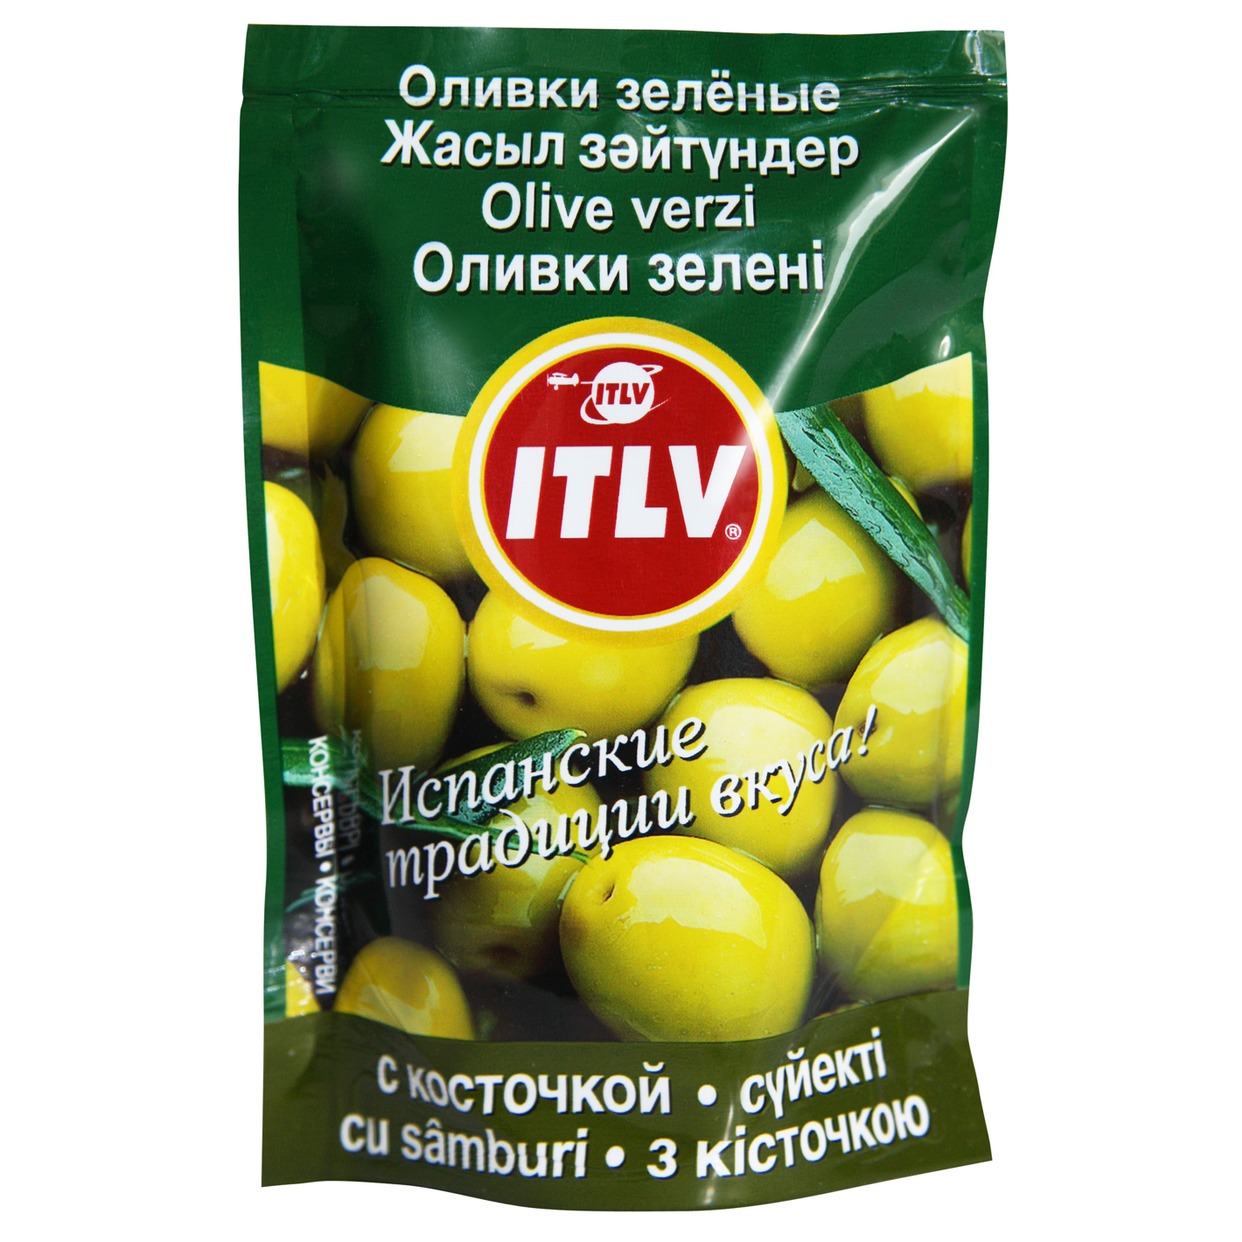 Оливки ITLV зеленые с косточкой 195 г по акции в Пятерочке